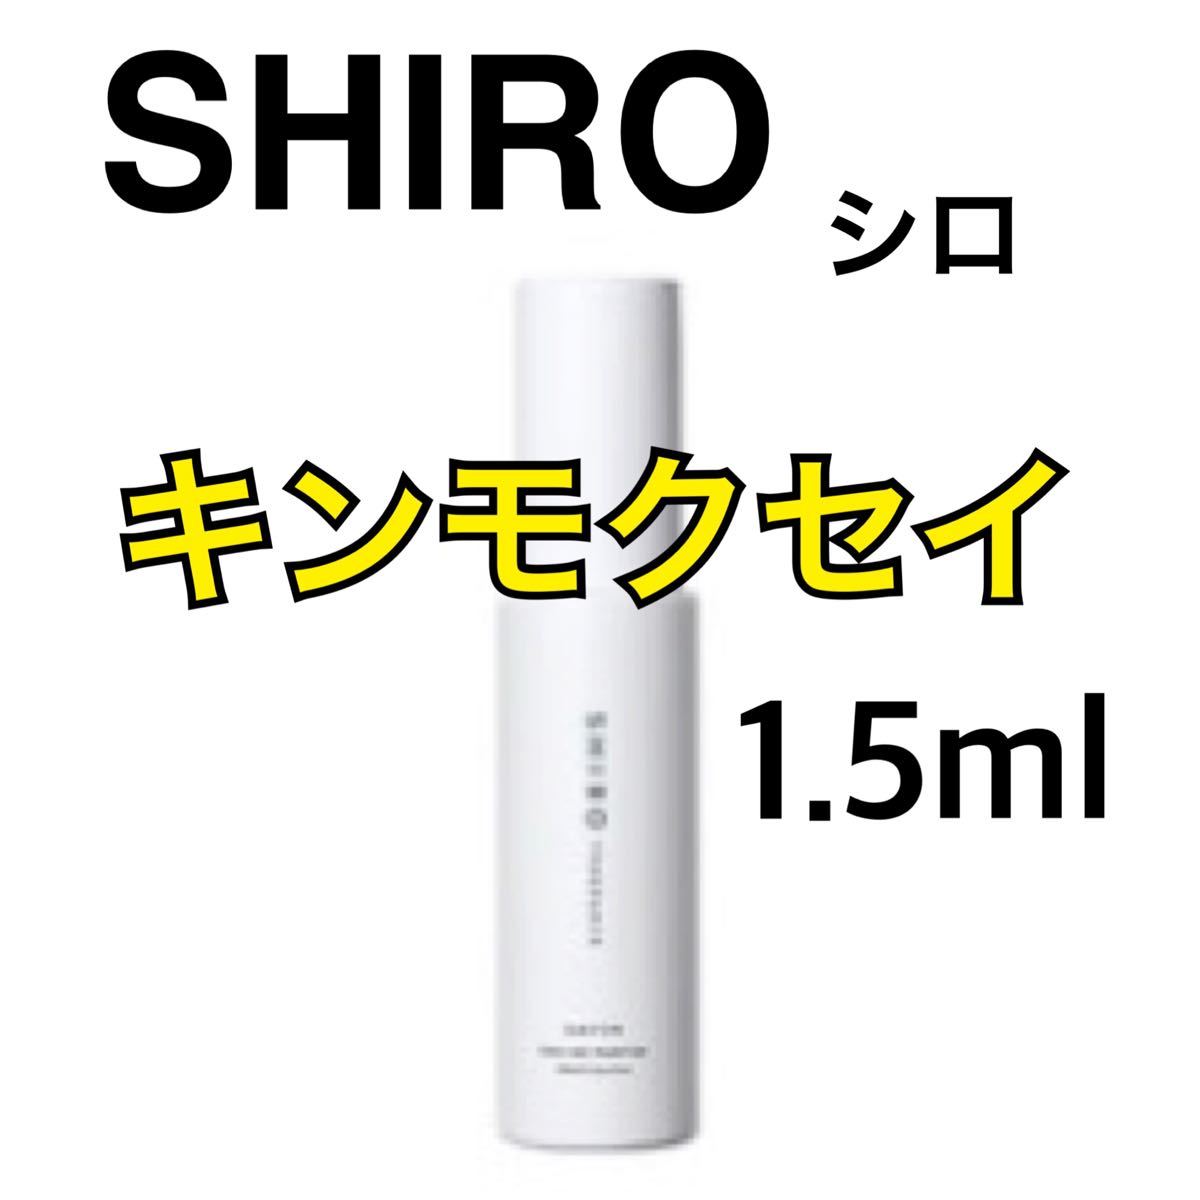 SHIRO シロキンモクセイ | trufar.com